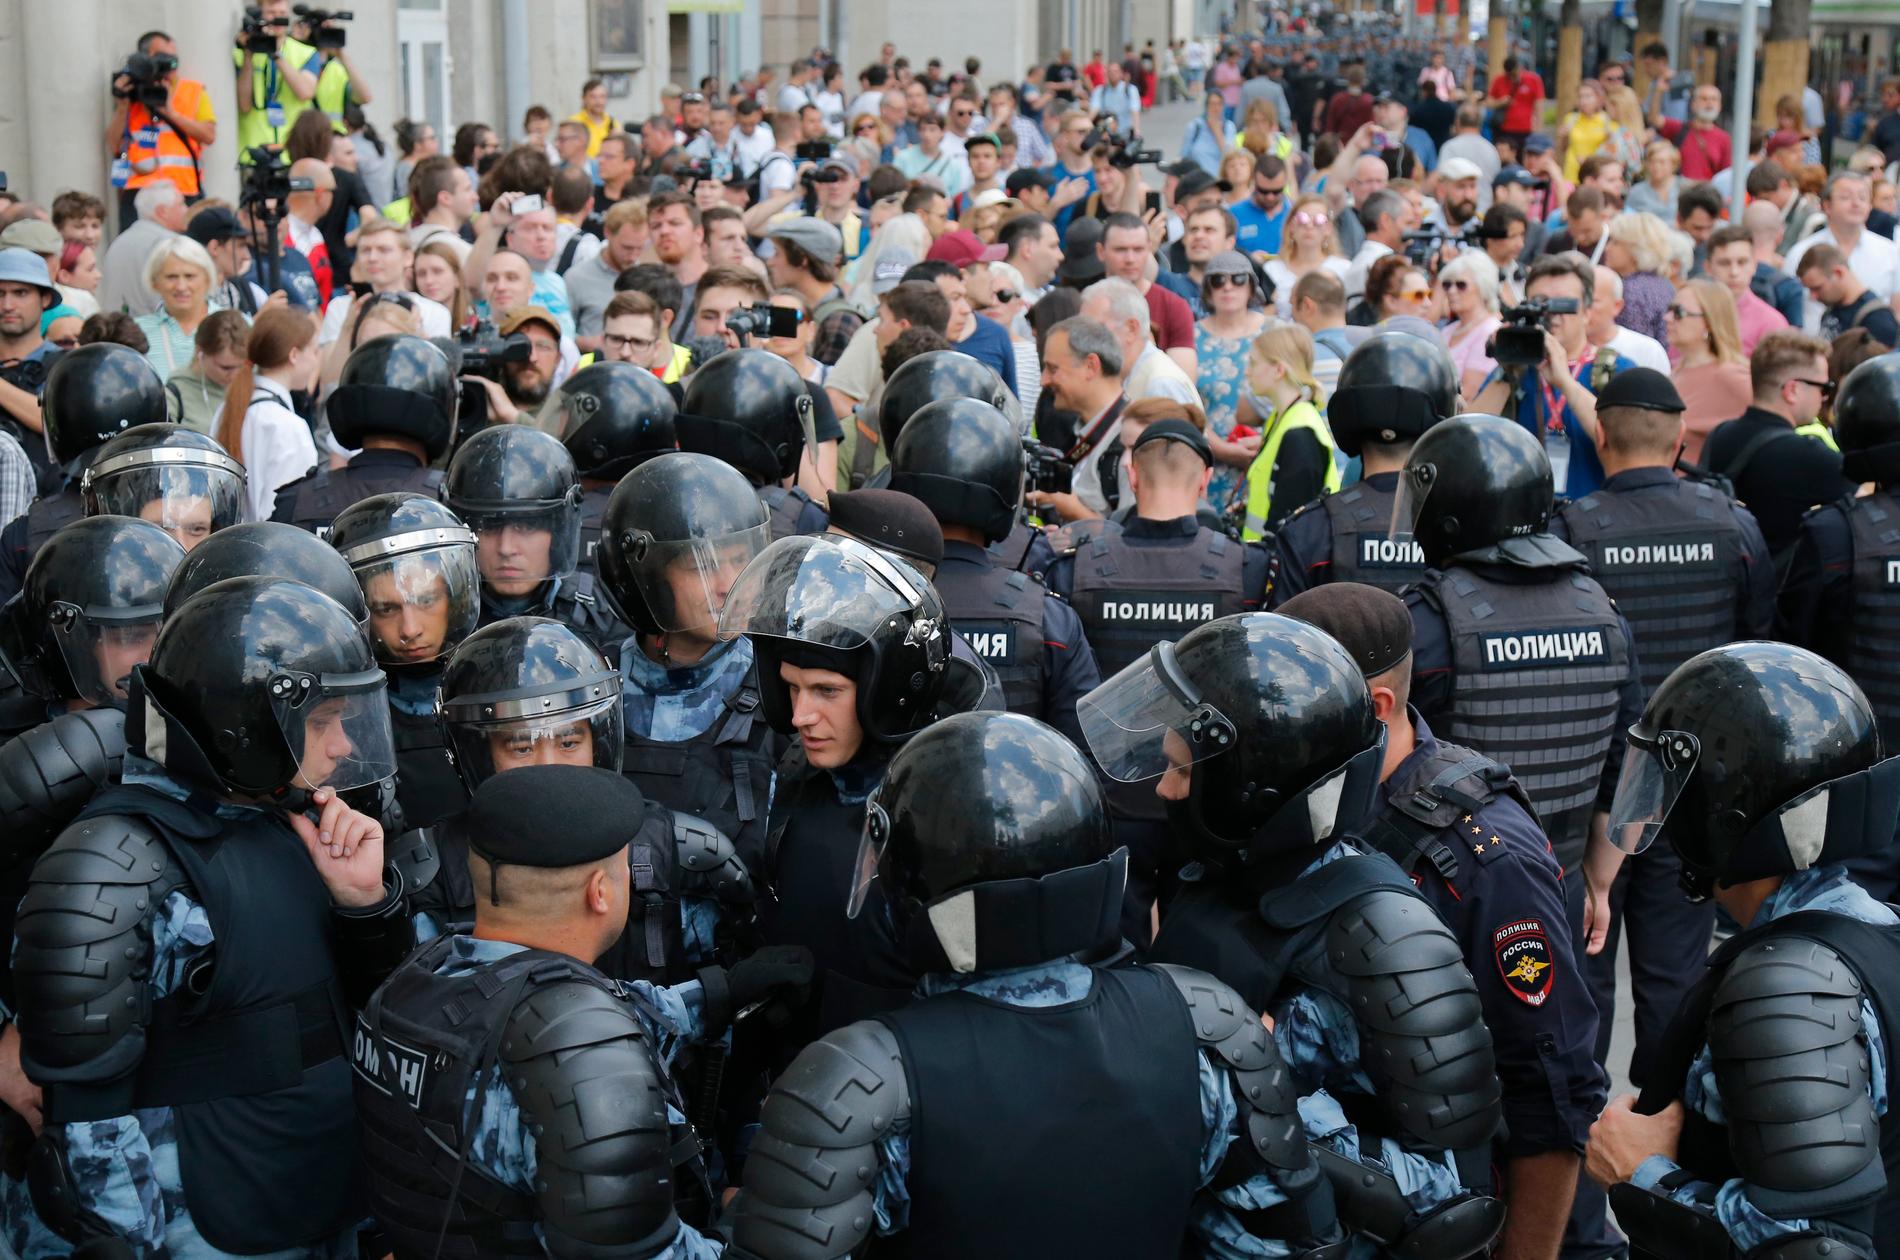 Polis sattes in med anledning av en planerad demonstration i Moskva sommaren 2019. Enligt OVD-Info greps runt 50 personer redan innan protesterna hade börjat. Arkivbild.